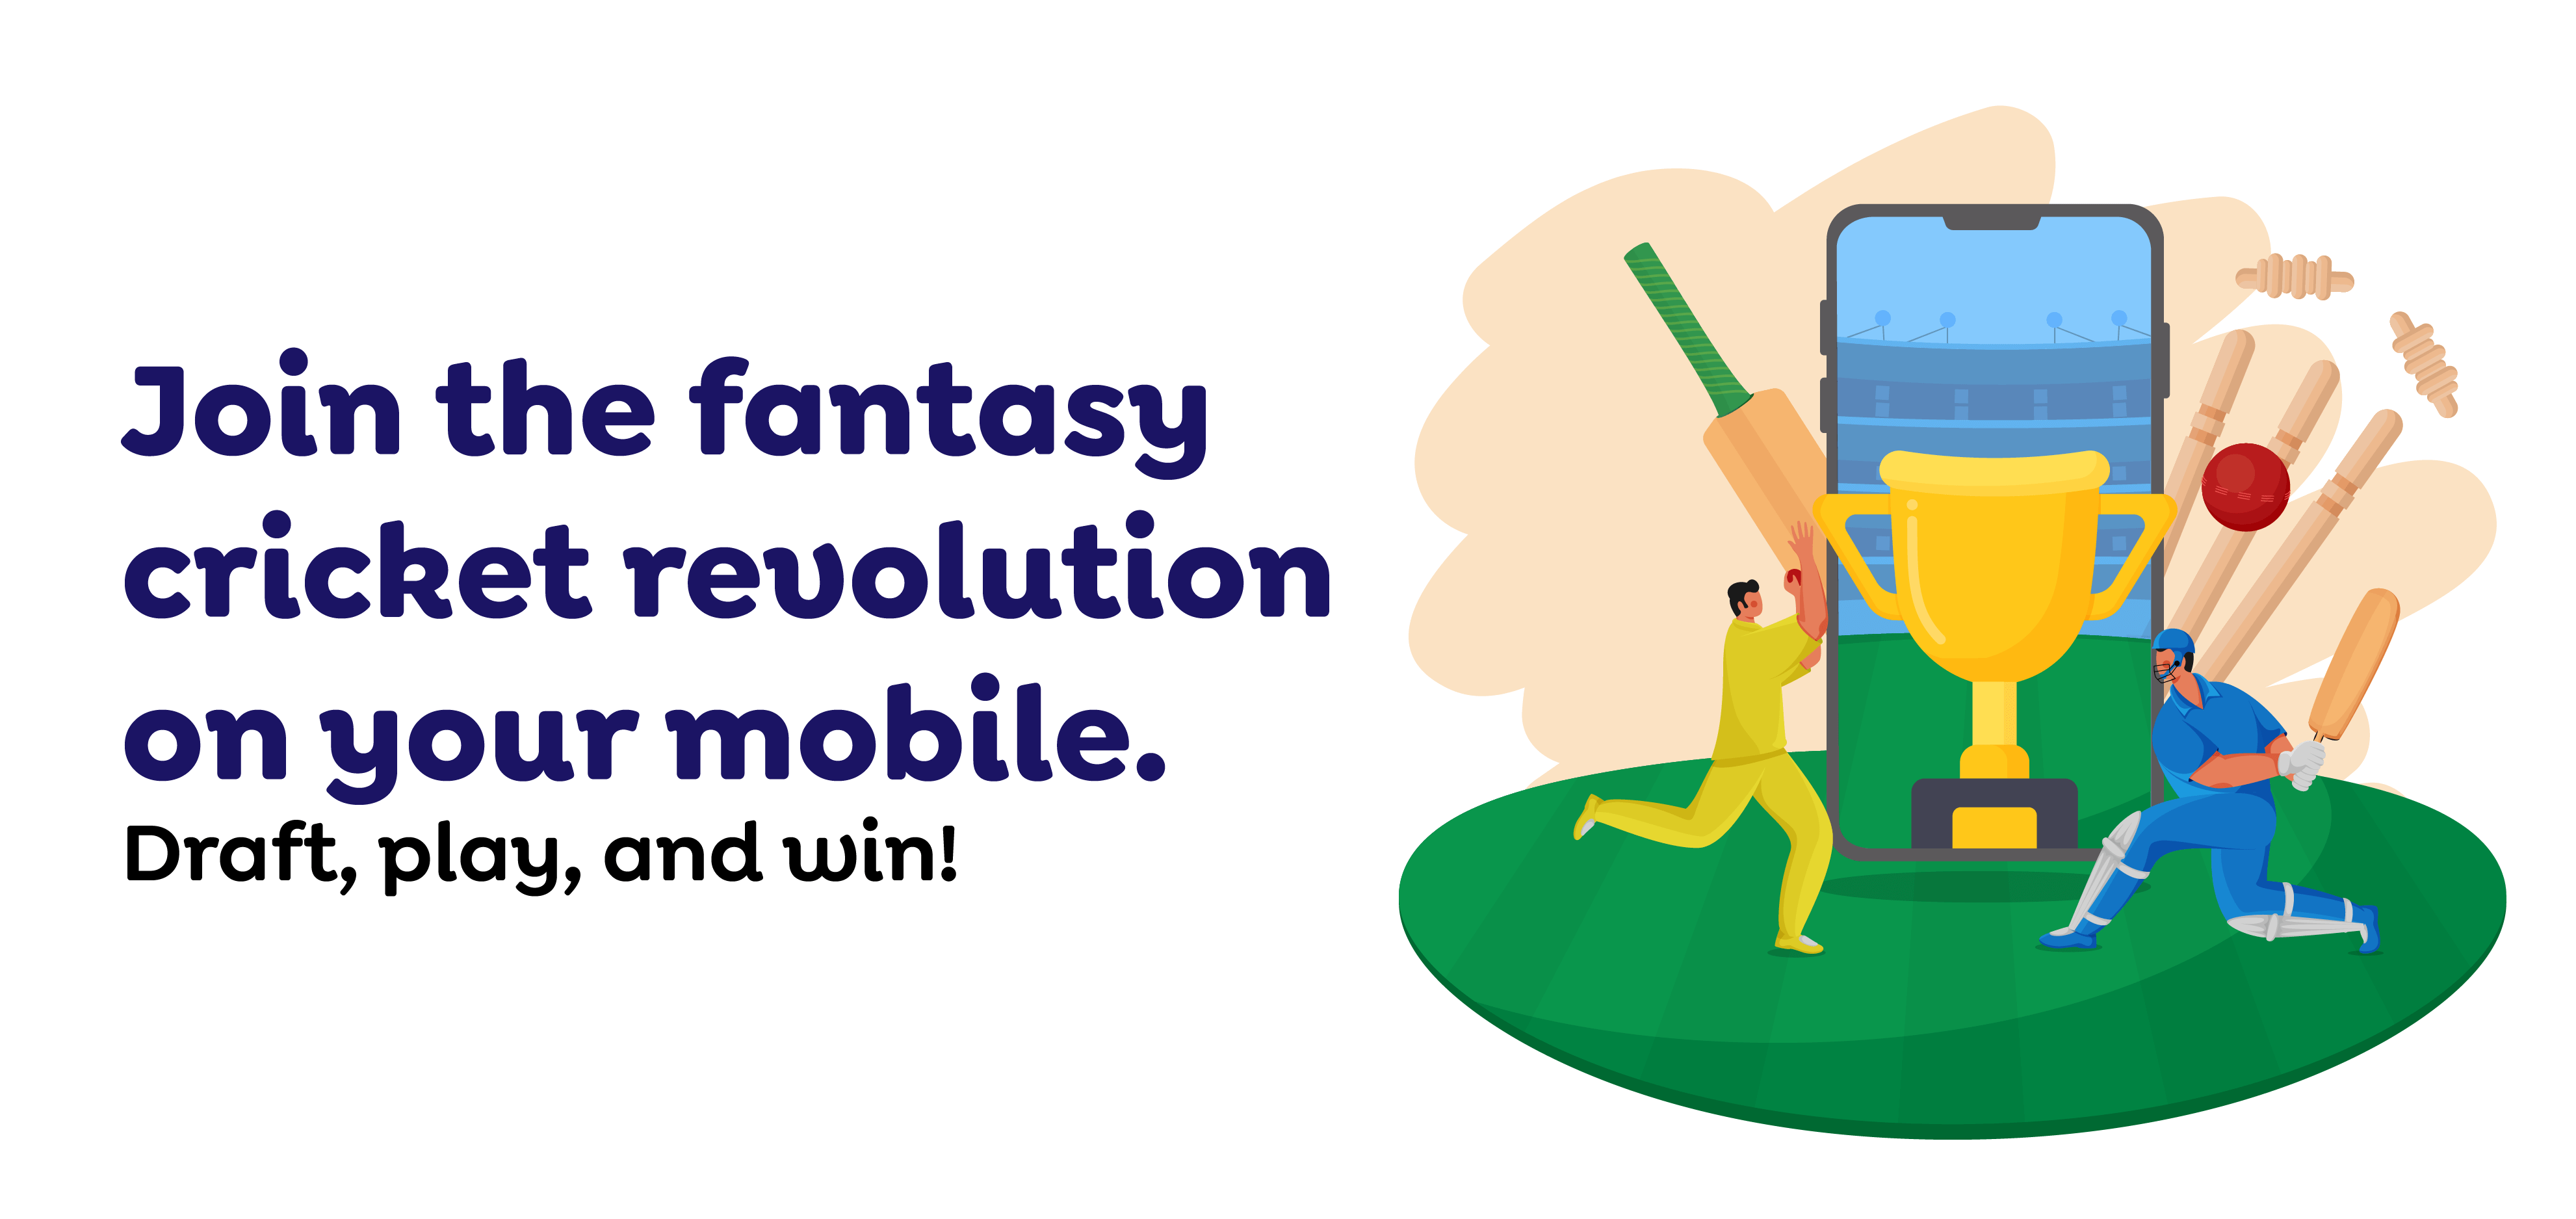 Fantasy cricket app